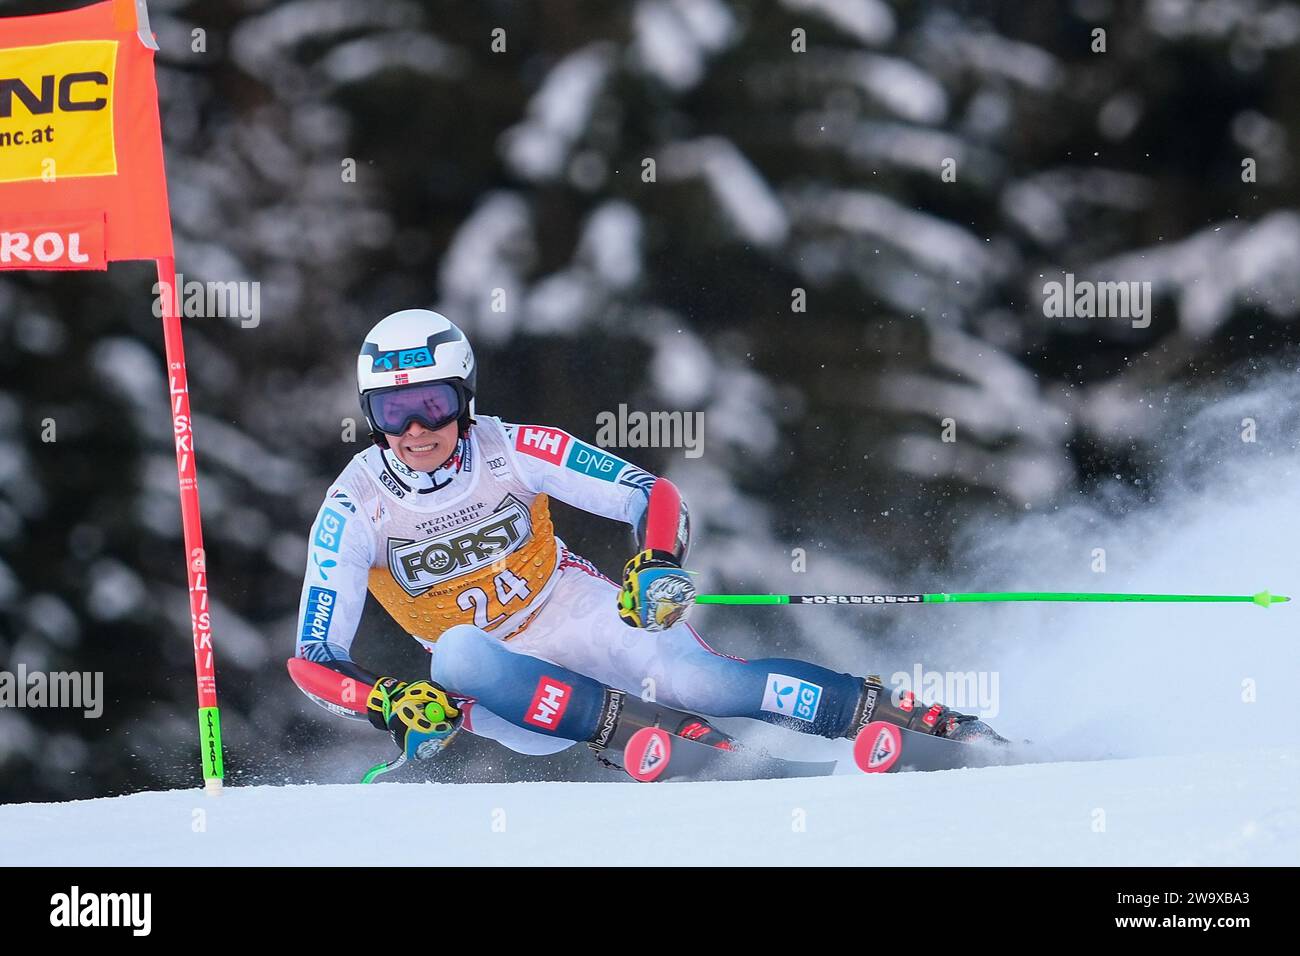 Alexander Steen Olsen (NOR) gareggia durante la Coppa del mondo di sci alpino Audi FIS, MenÕs Giant Slalom Race sulla pista Gran Risa, alta Badia il 17 dicembre, Foto Stock